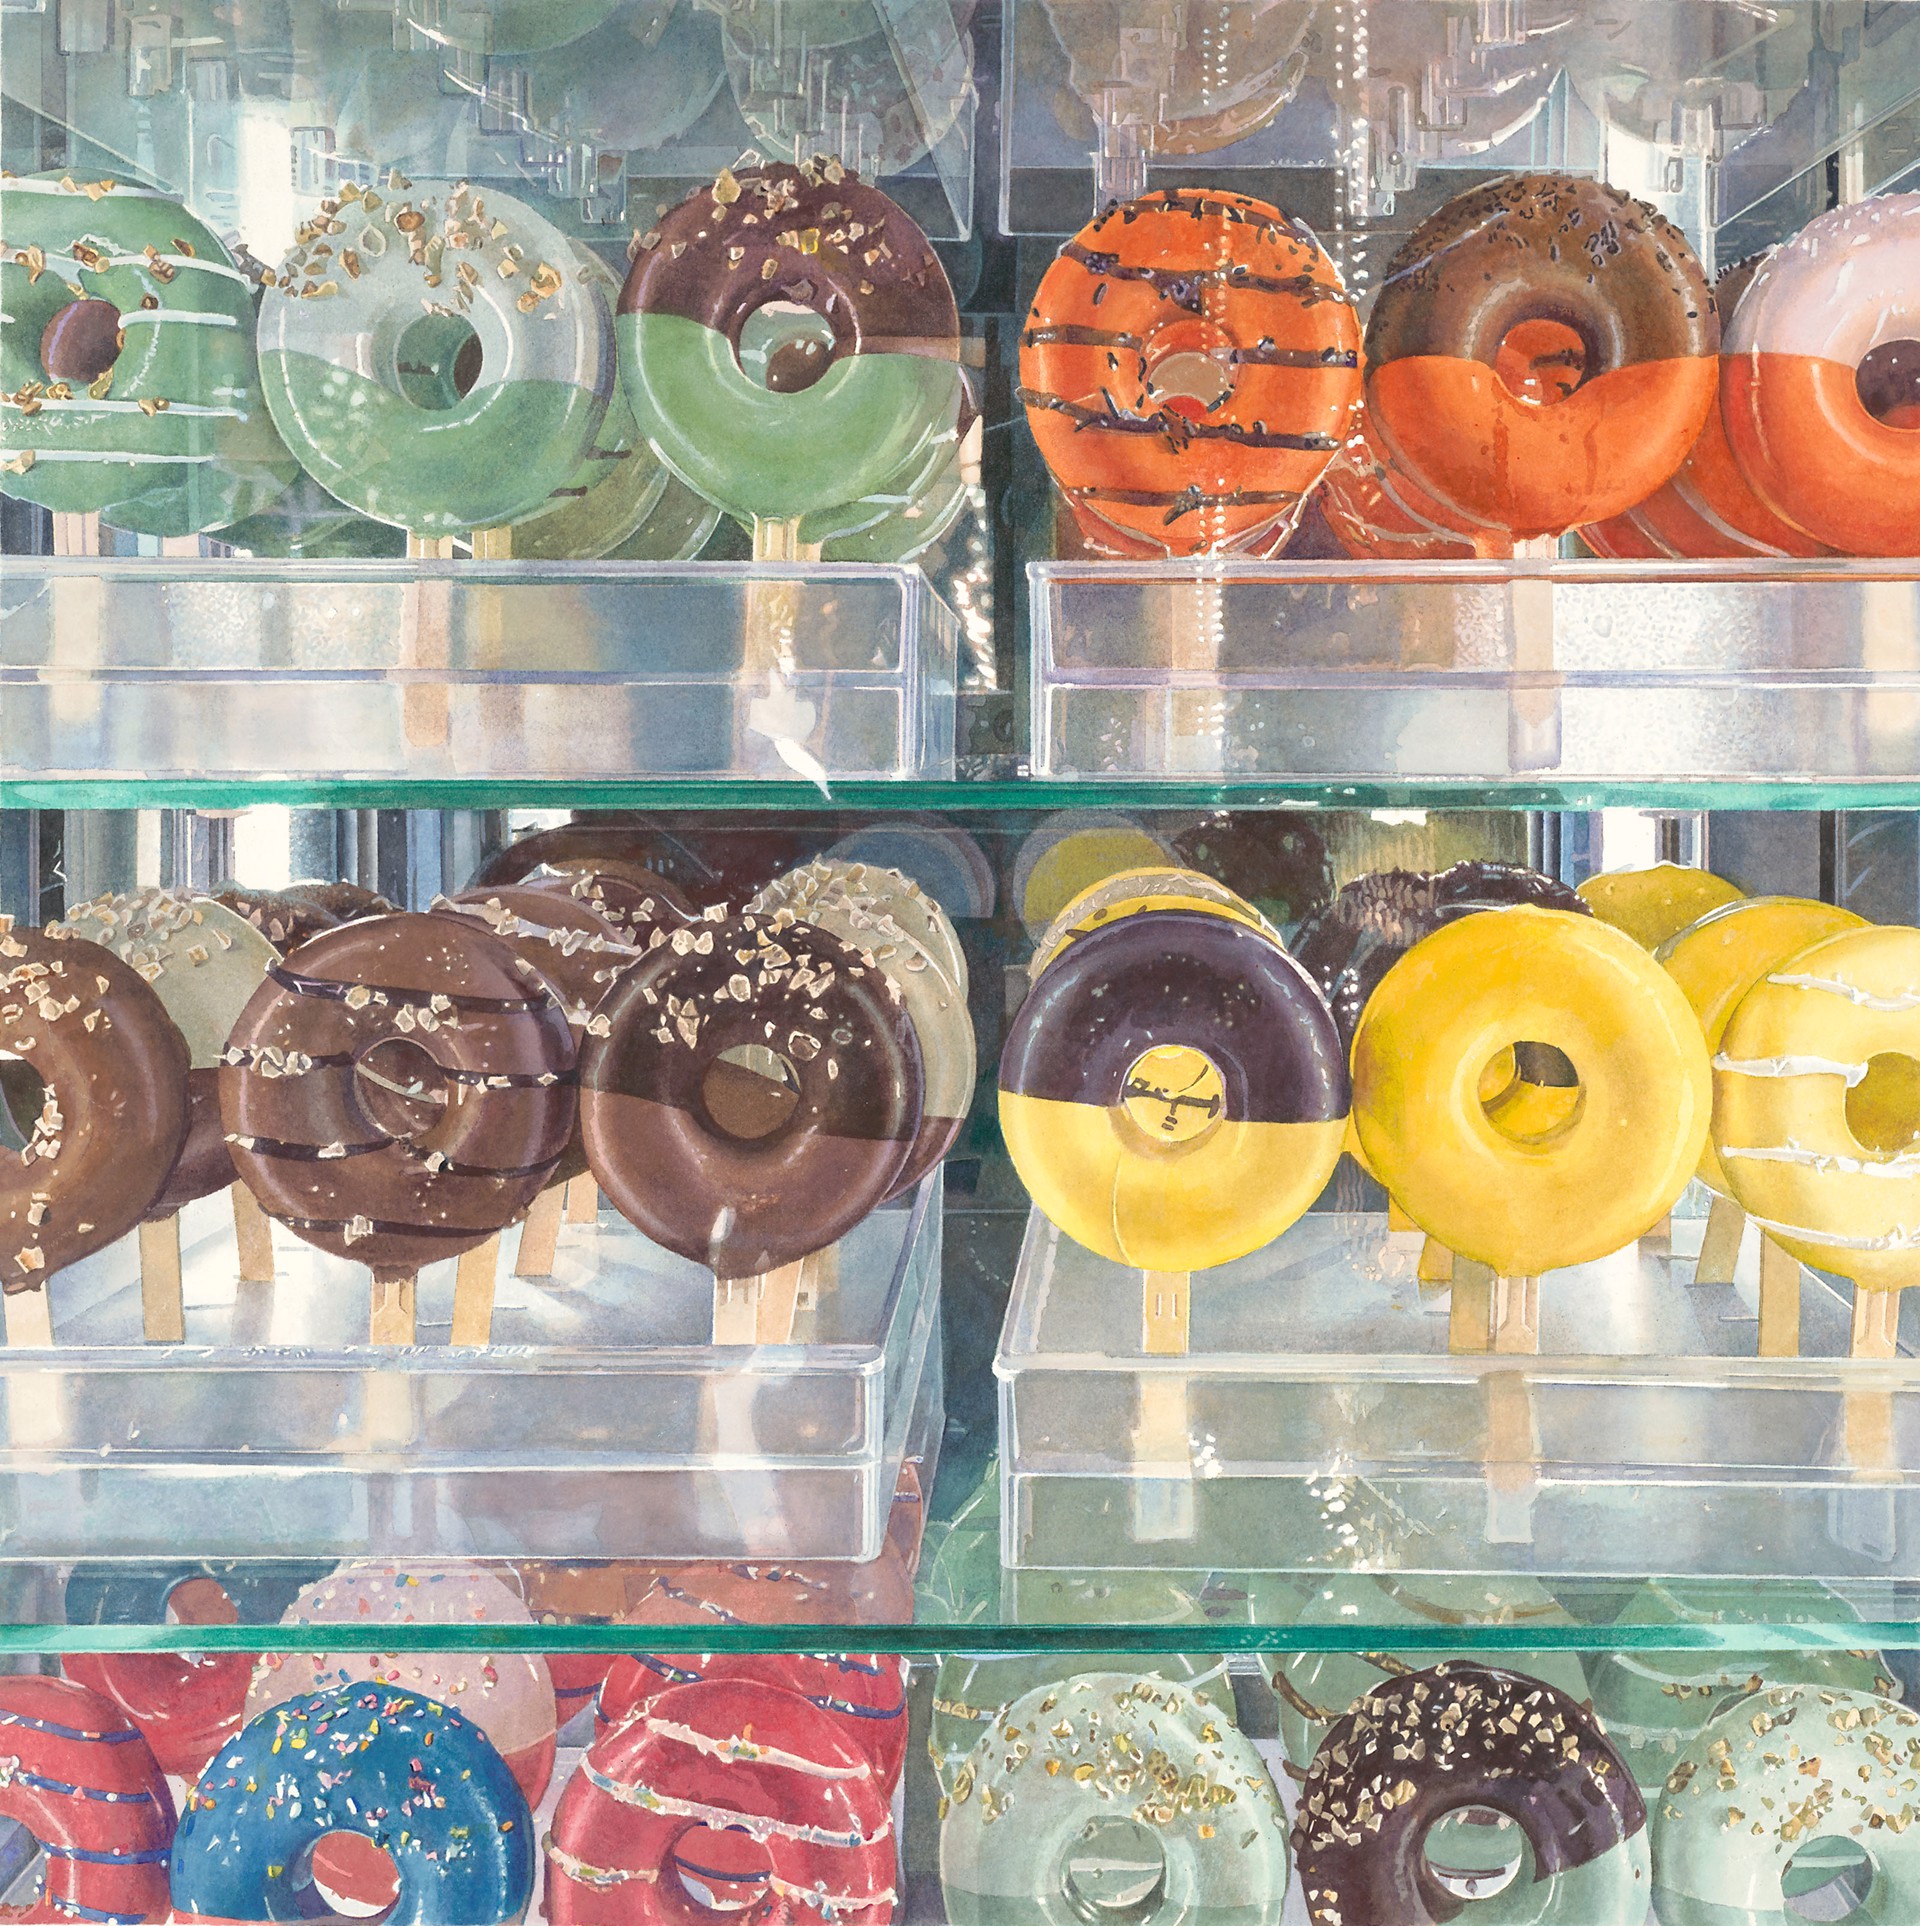 Donuts by Stephan Hoffpauir